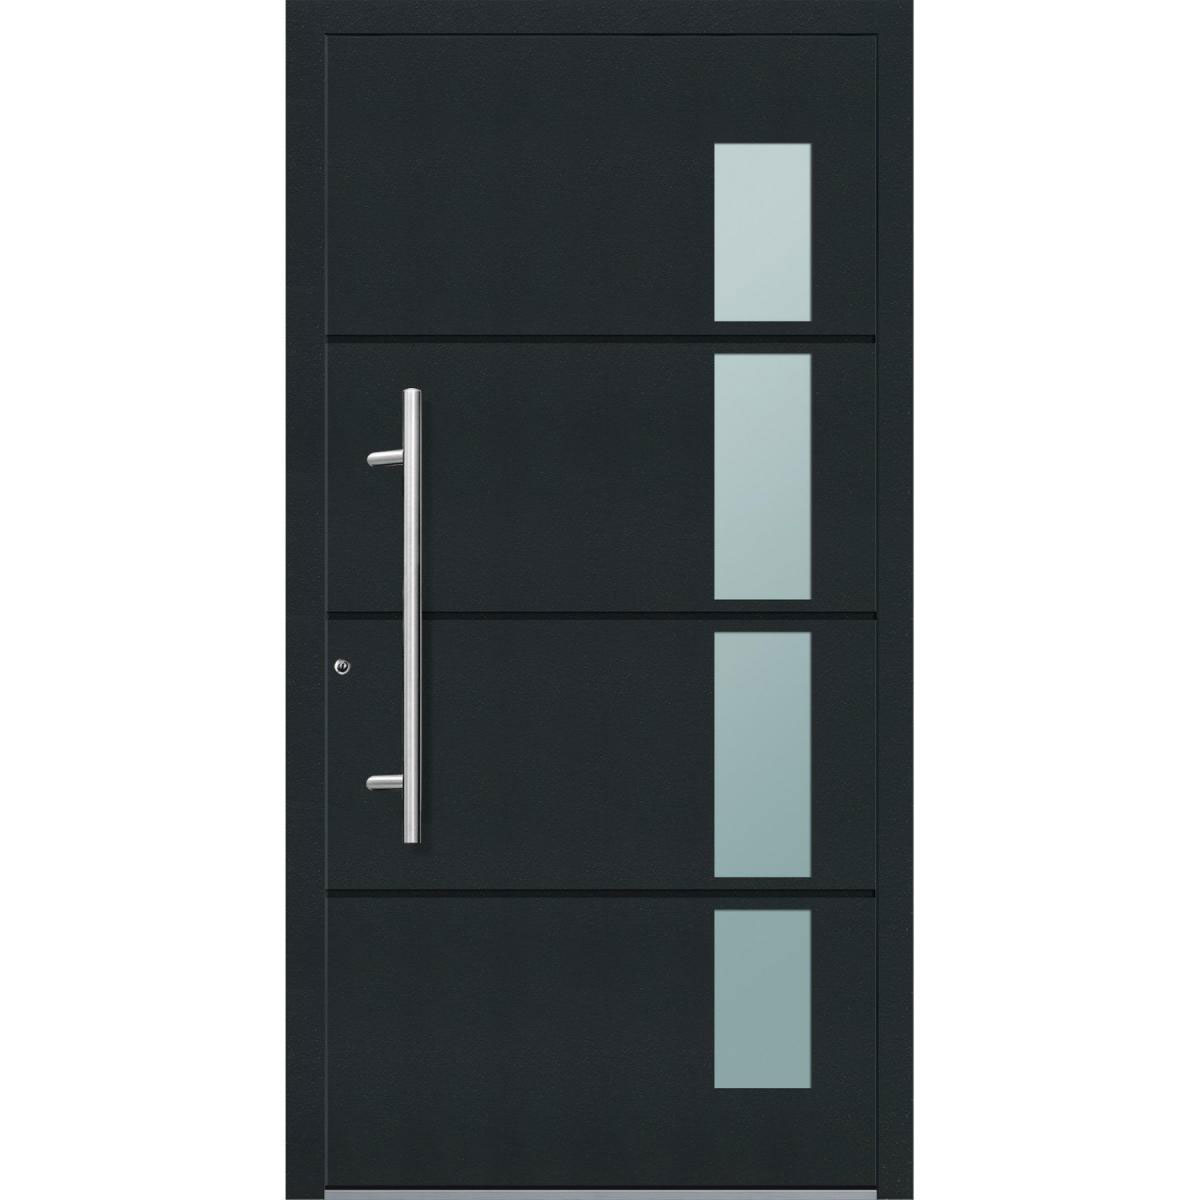 Aluminium Sicherheits-Haustür „Prato Exklusiv“, 75mm, anthrazit, 100x210 cm, Anschlag links, inkl. Griffset